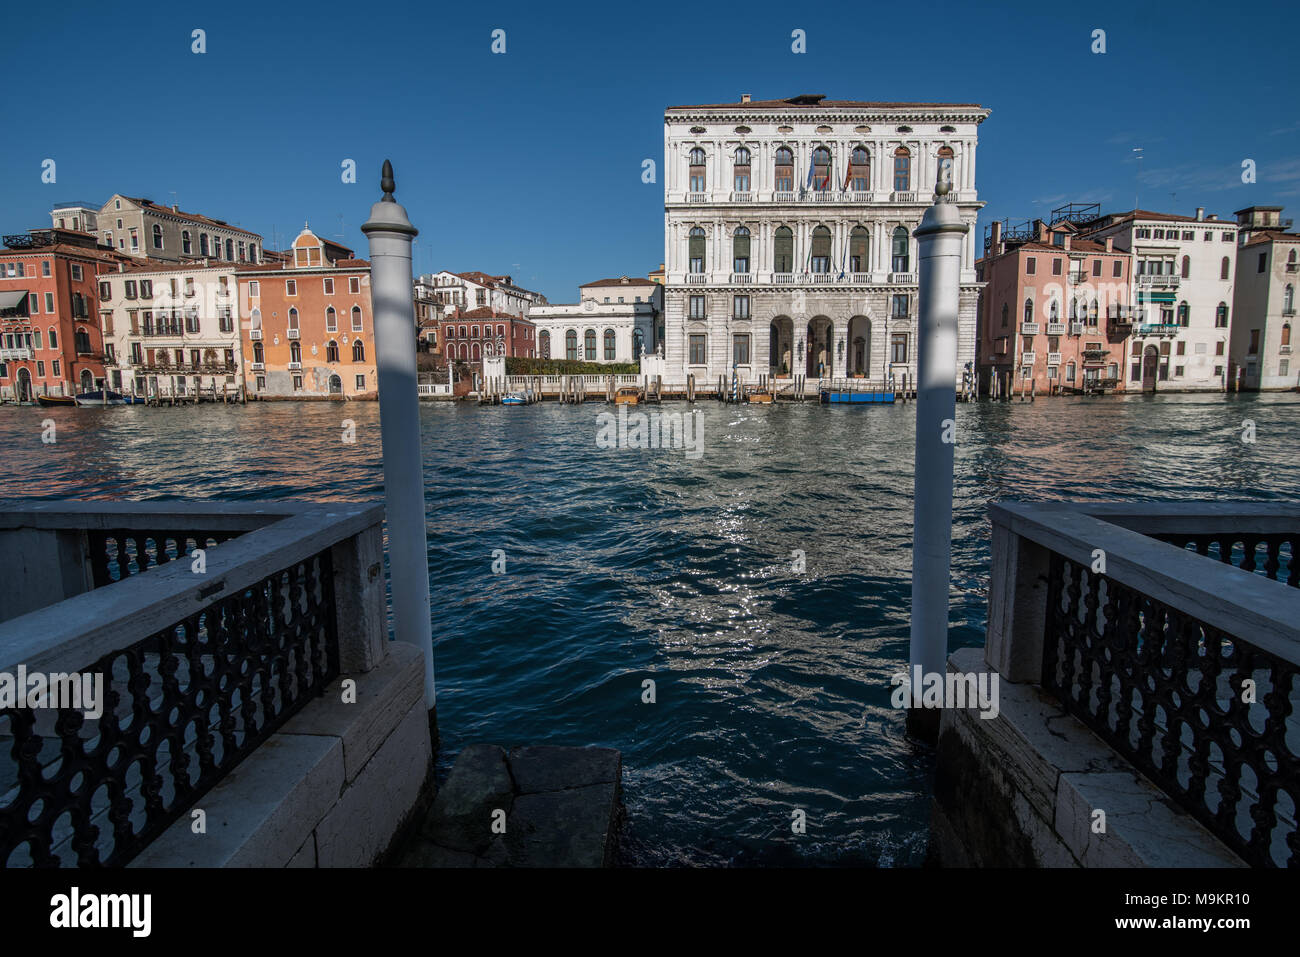 L'Italia, Venezia - giorno ordinario di Venezia con canali e gondole in giro per la città Foto Stock